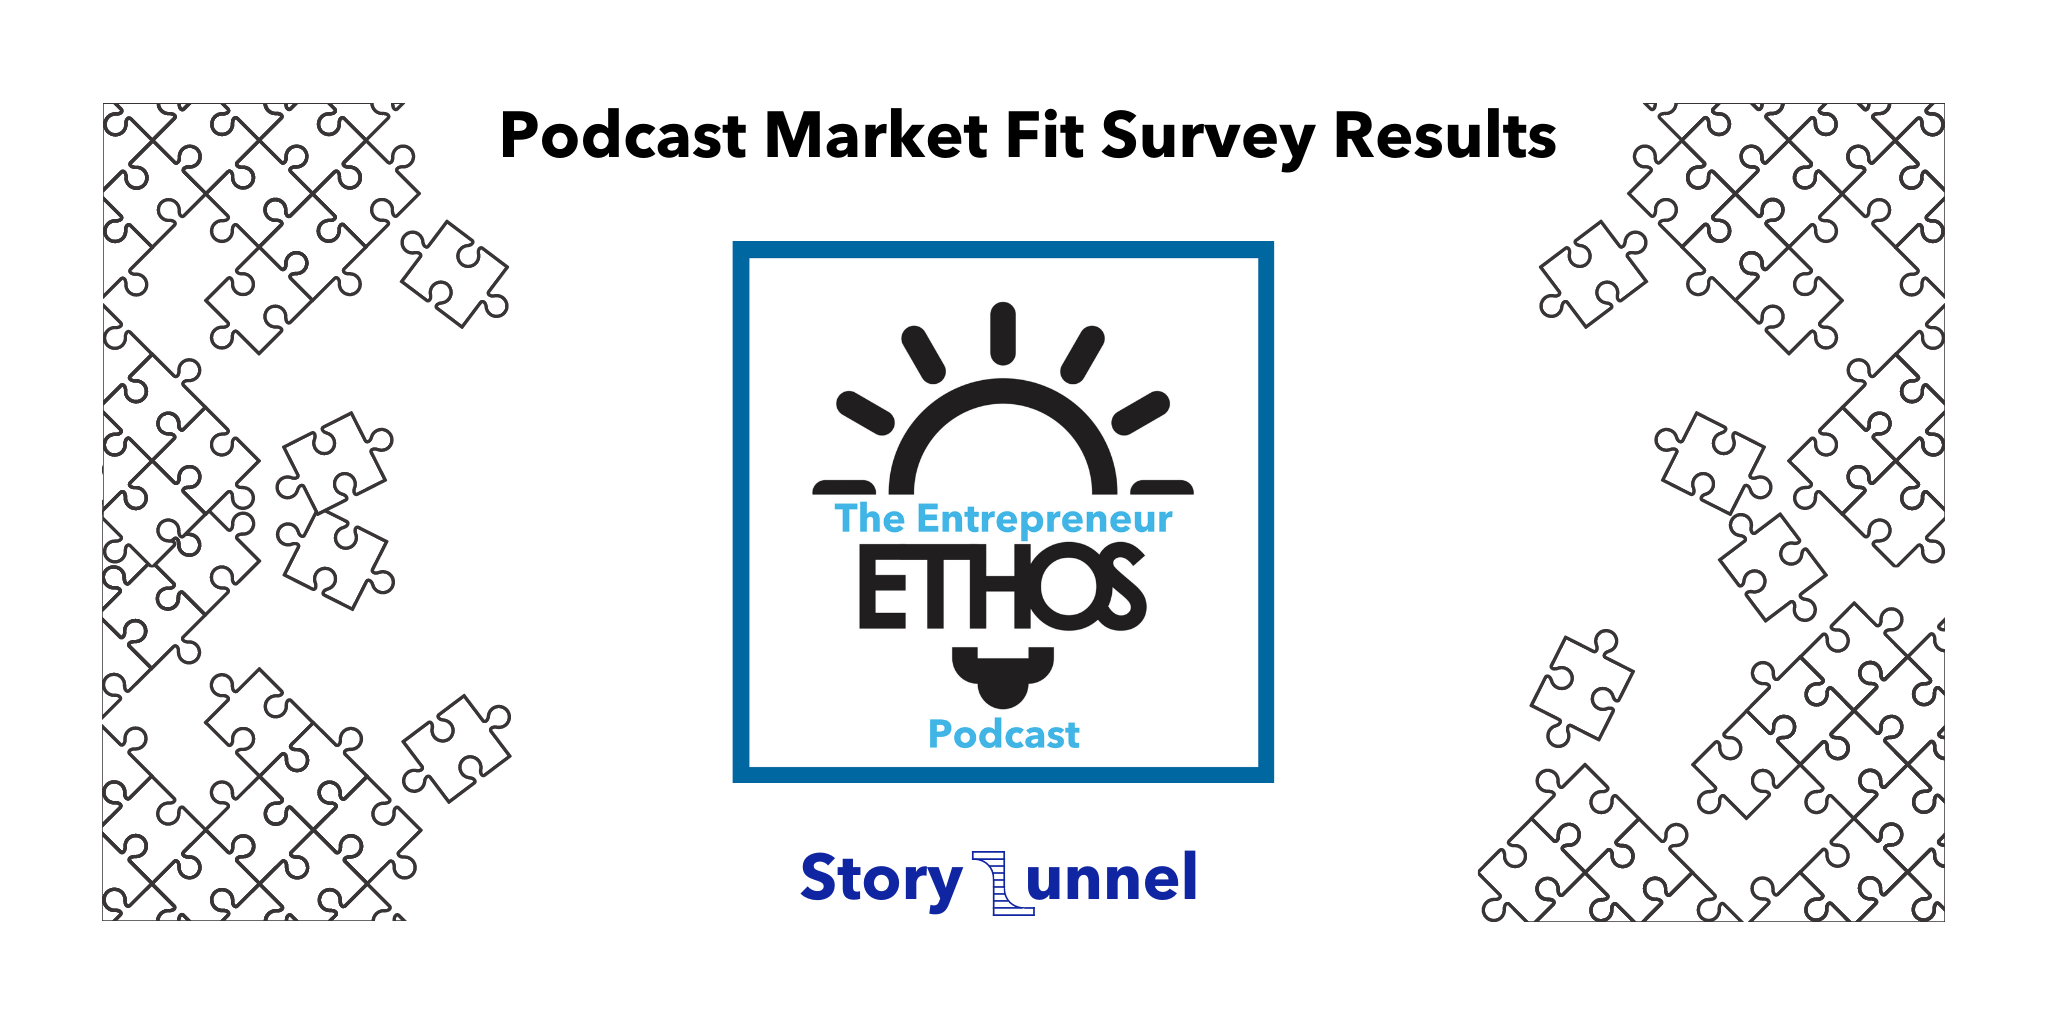 The Entrepreneur Ethos Podcast Market Fit Survey